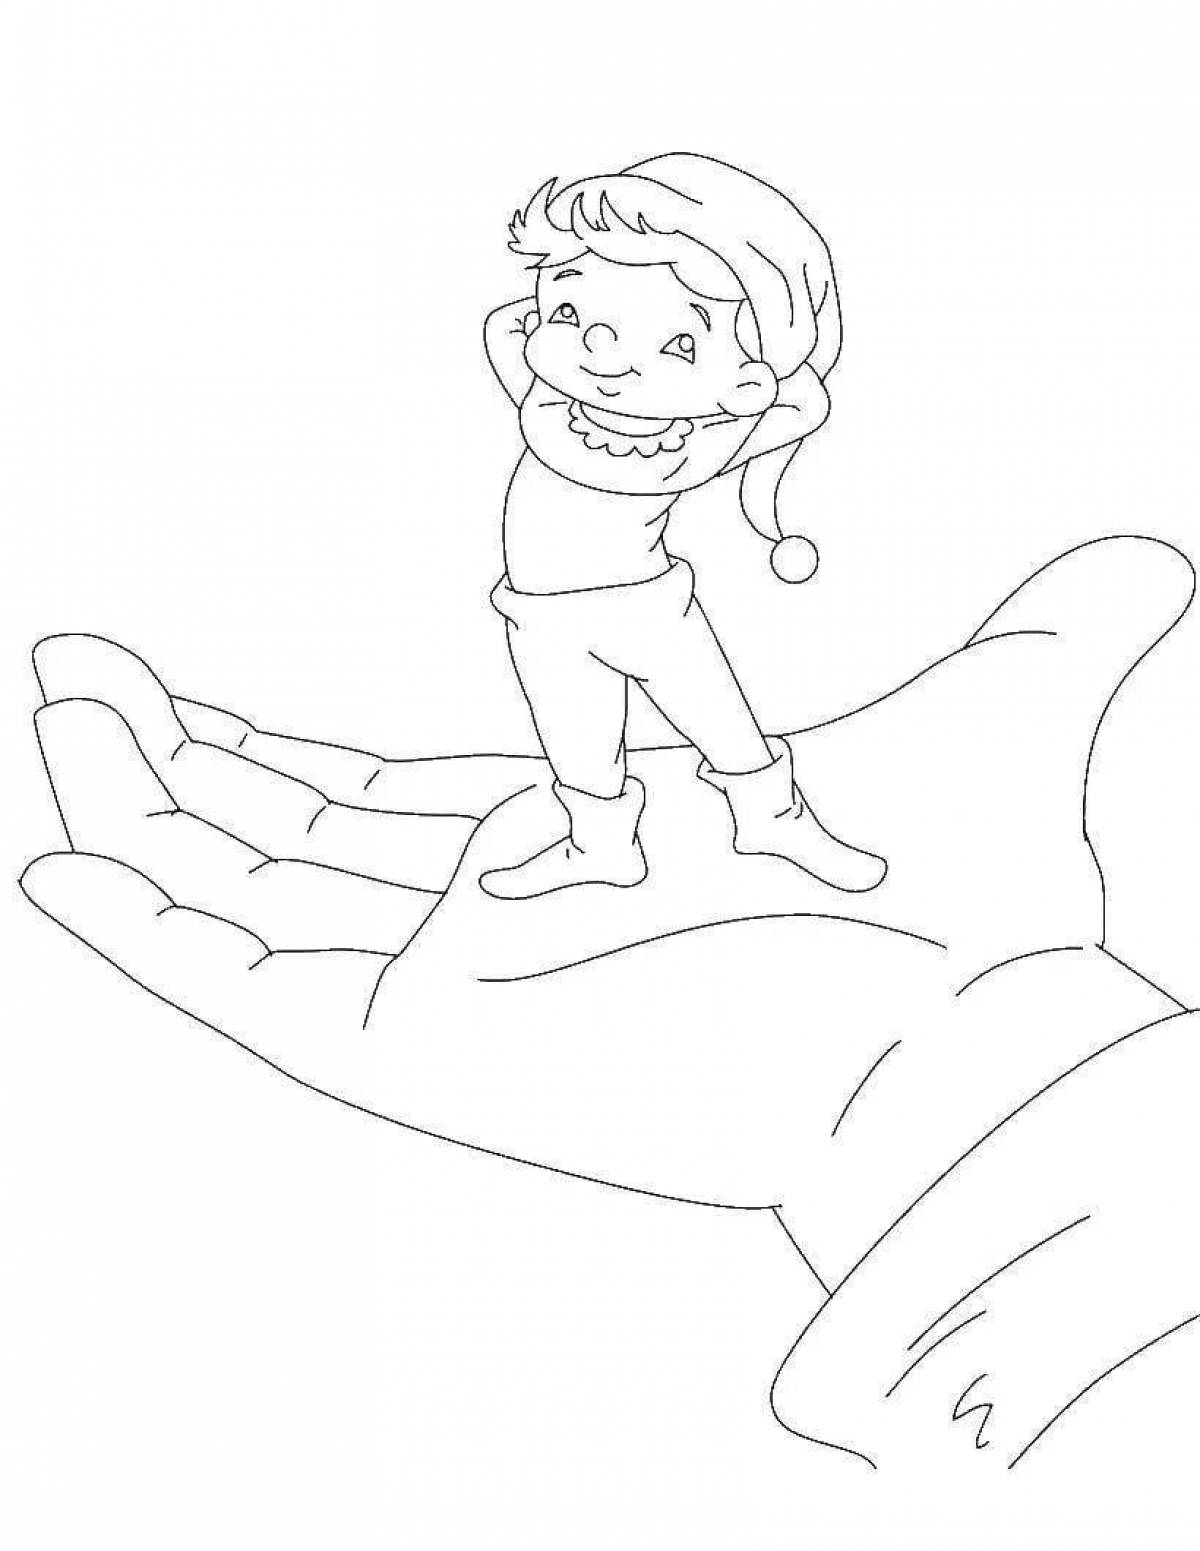 Рисование тема мальчик с пальчик. Рисование по сказке Перро мальчик с пальчик. Раскраски к сказке мальчик с пальчик Шарля Перро. Мальчик с пальчик раскраска.